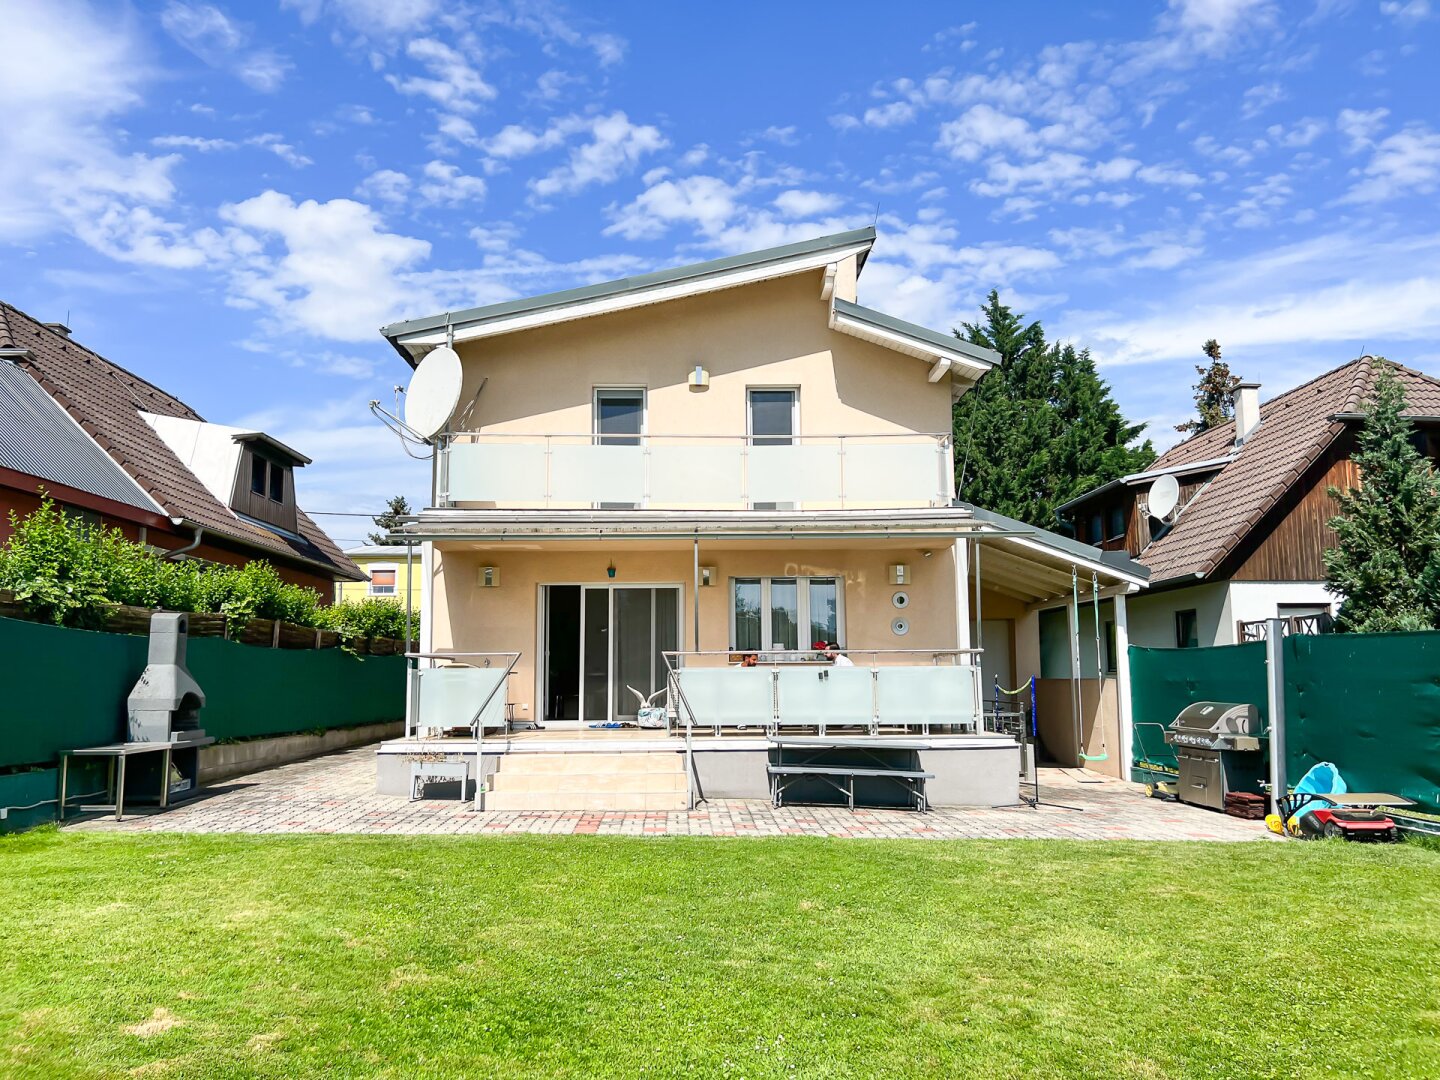 Neuwertiges modernes Einfamilienhaus mit 616 m2 Grundstück in Eßling! Direkte Busverbindung zur U2